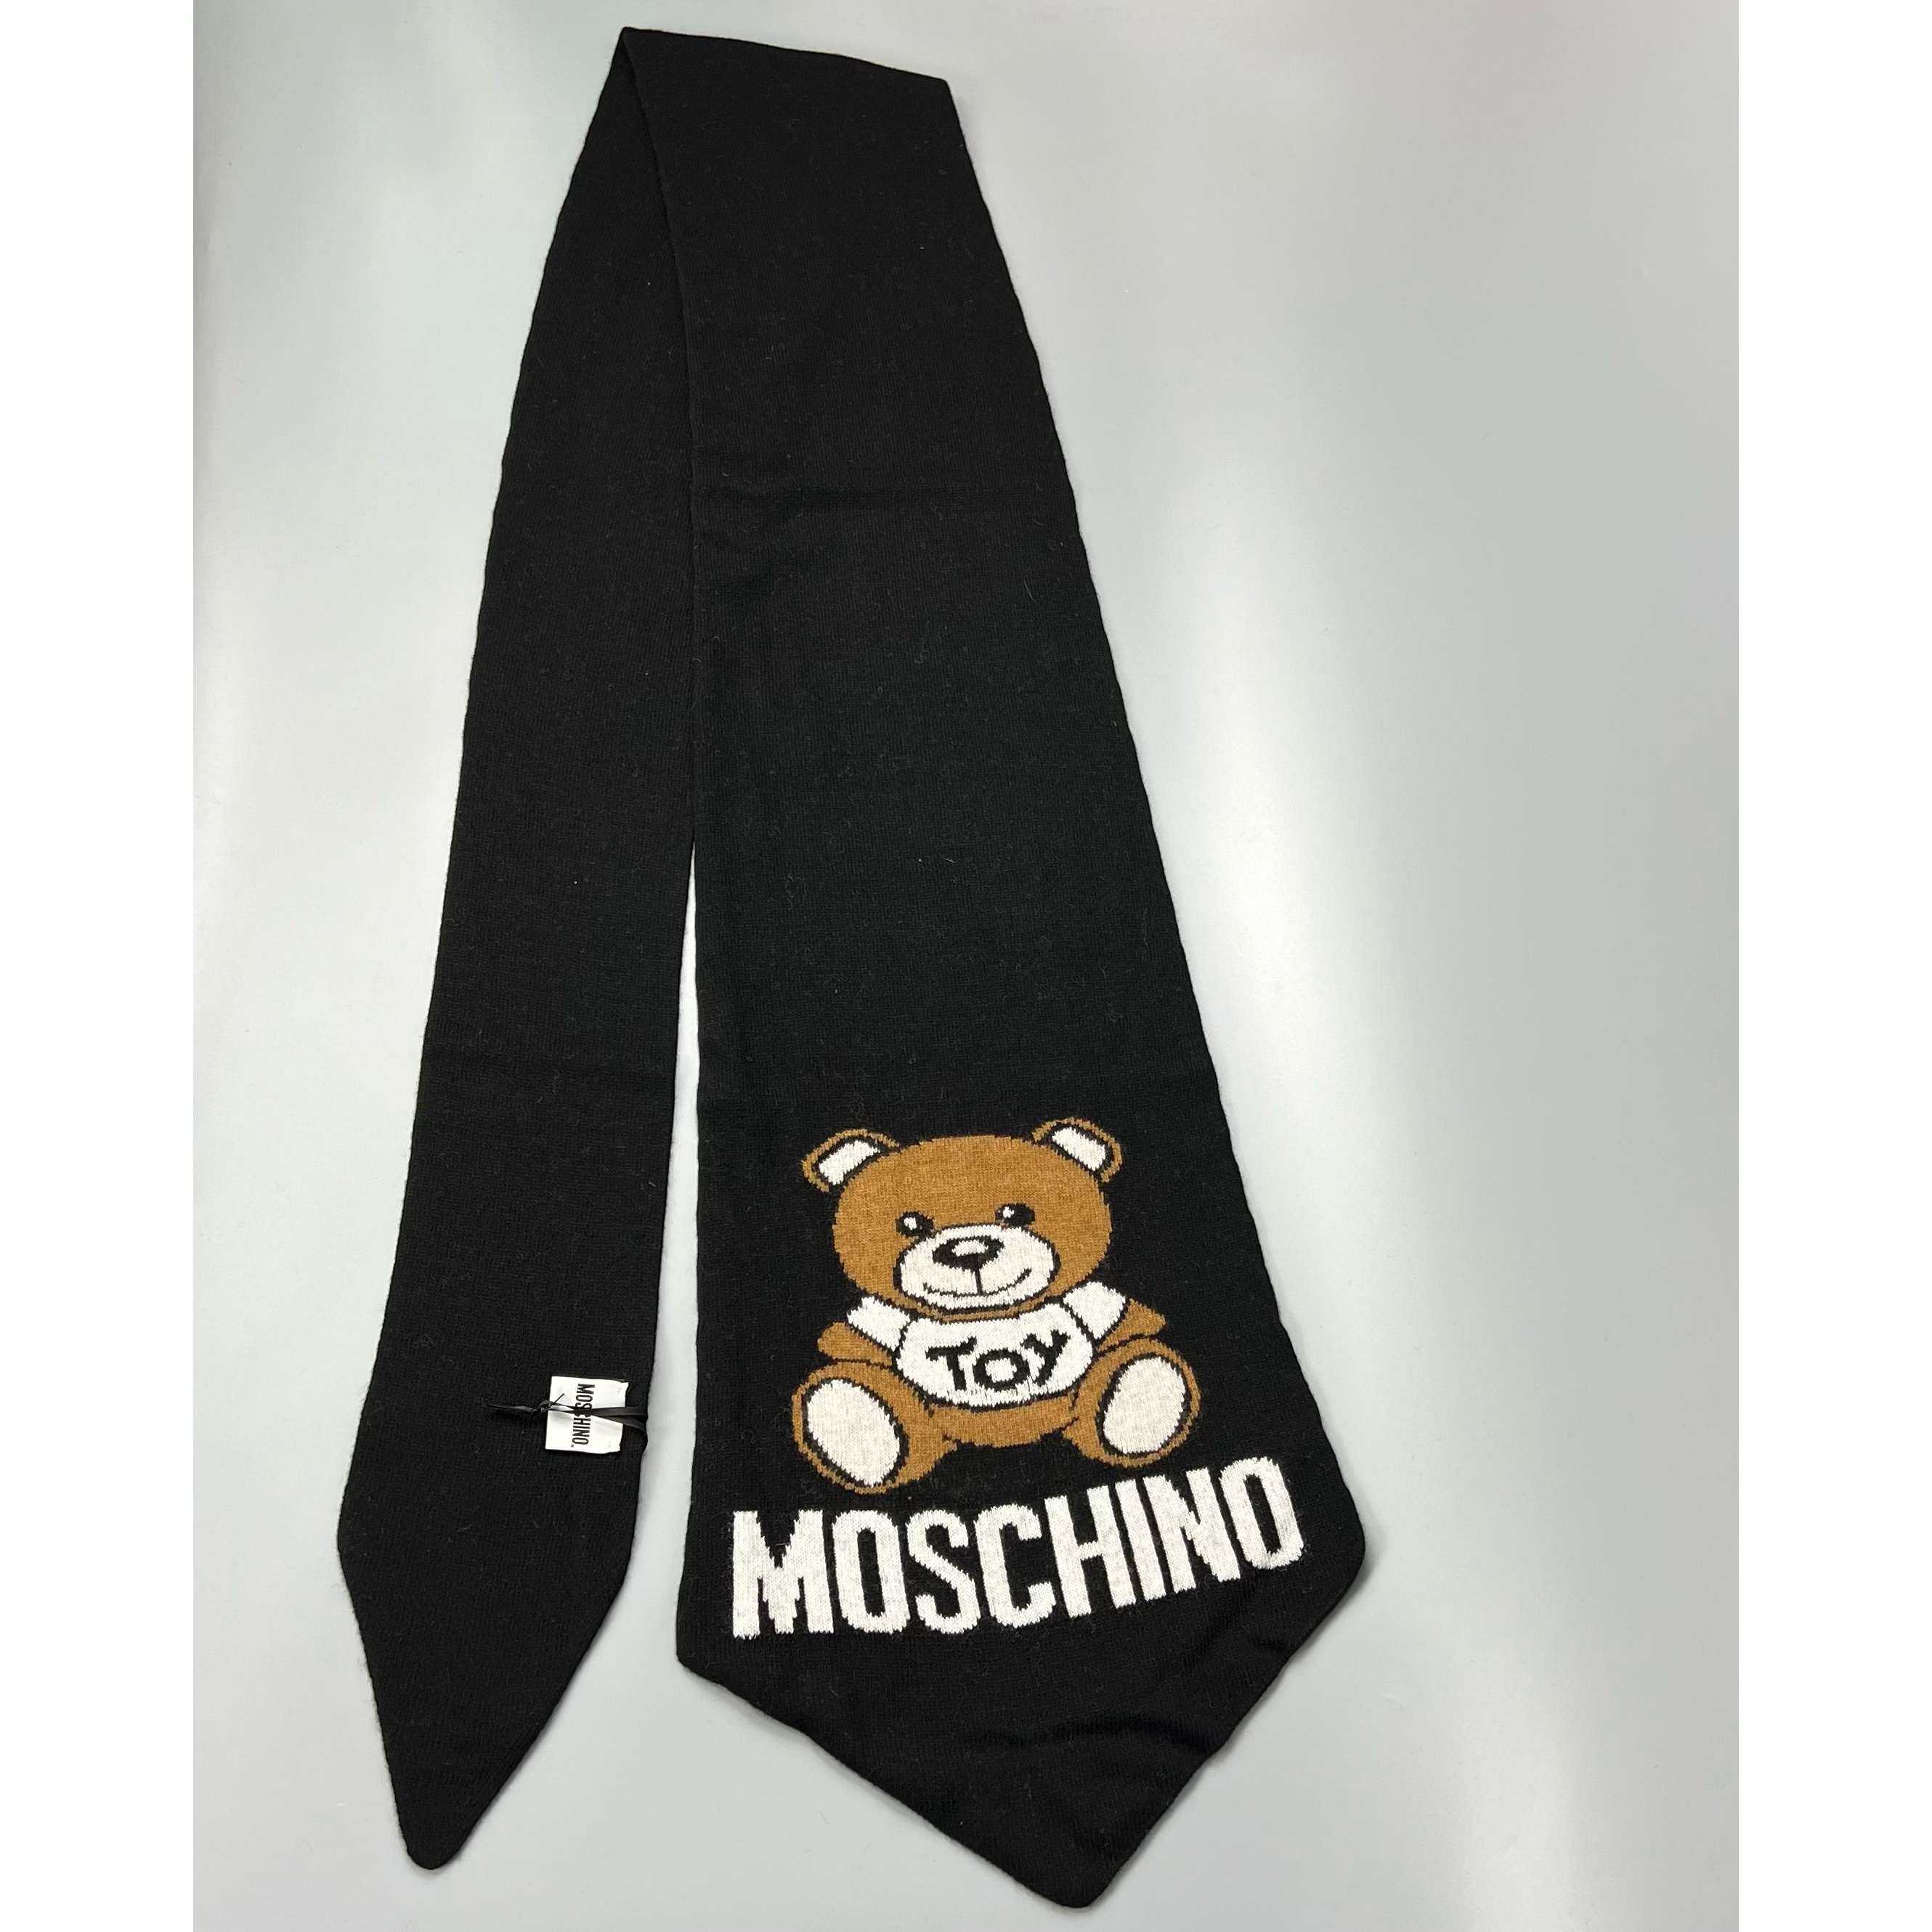 Moschino 50116 M5264 001